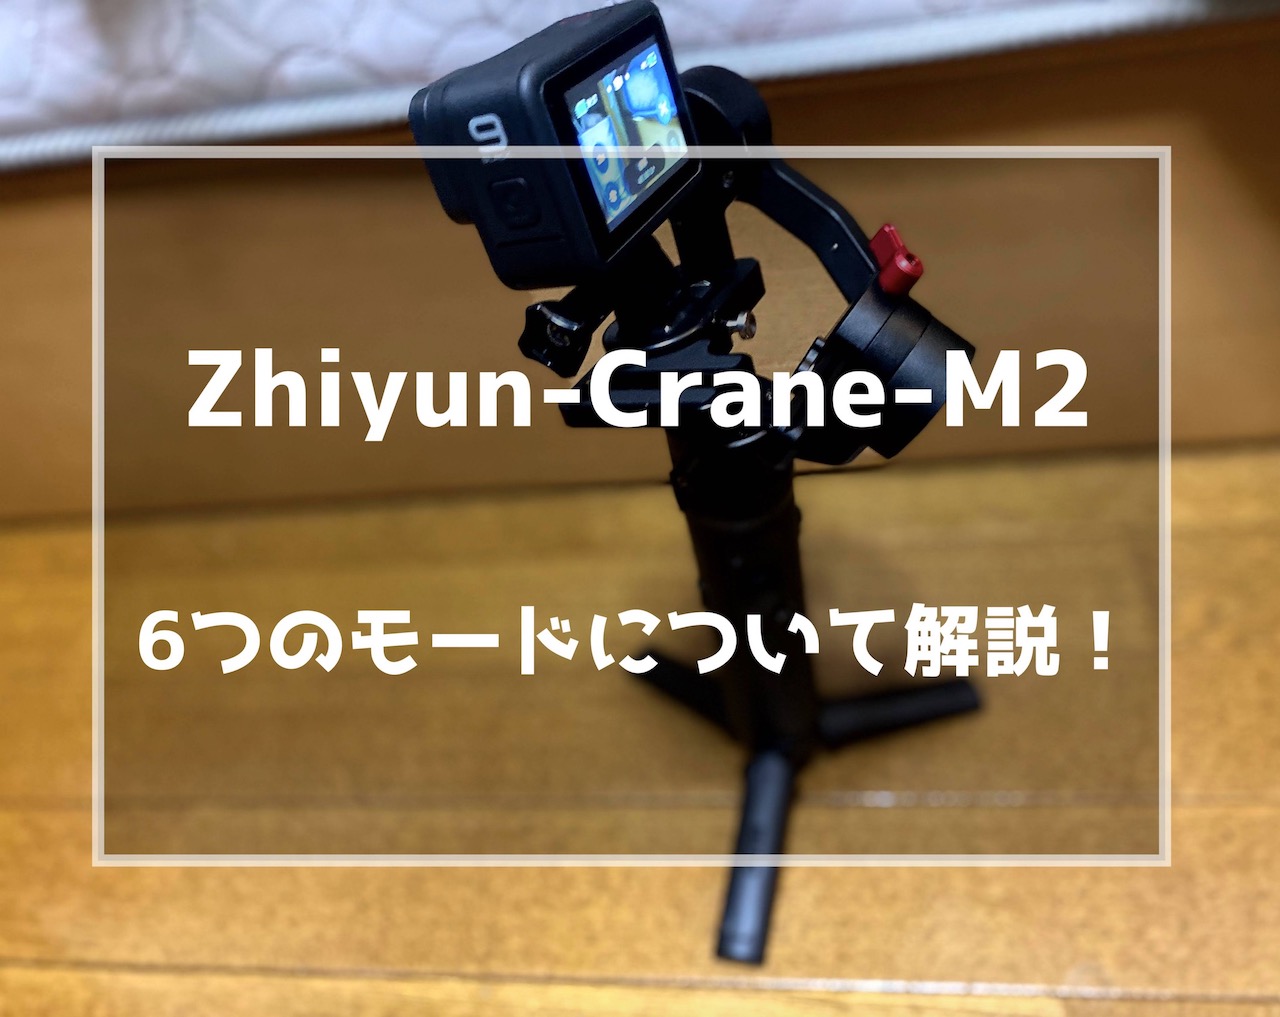 Zhiyun-Crane-M2 6つのモードについて解説